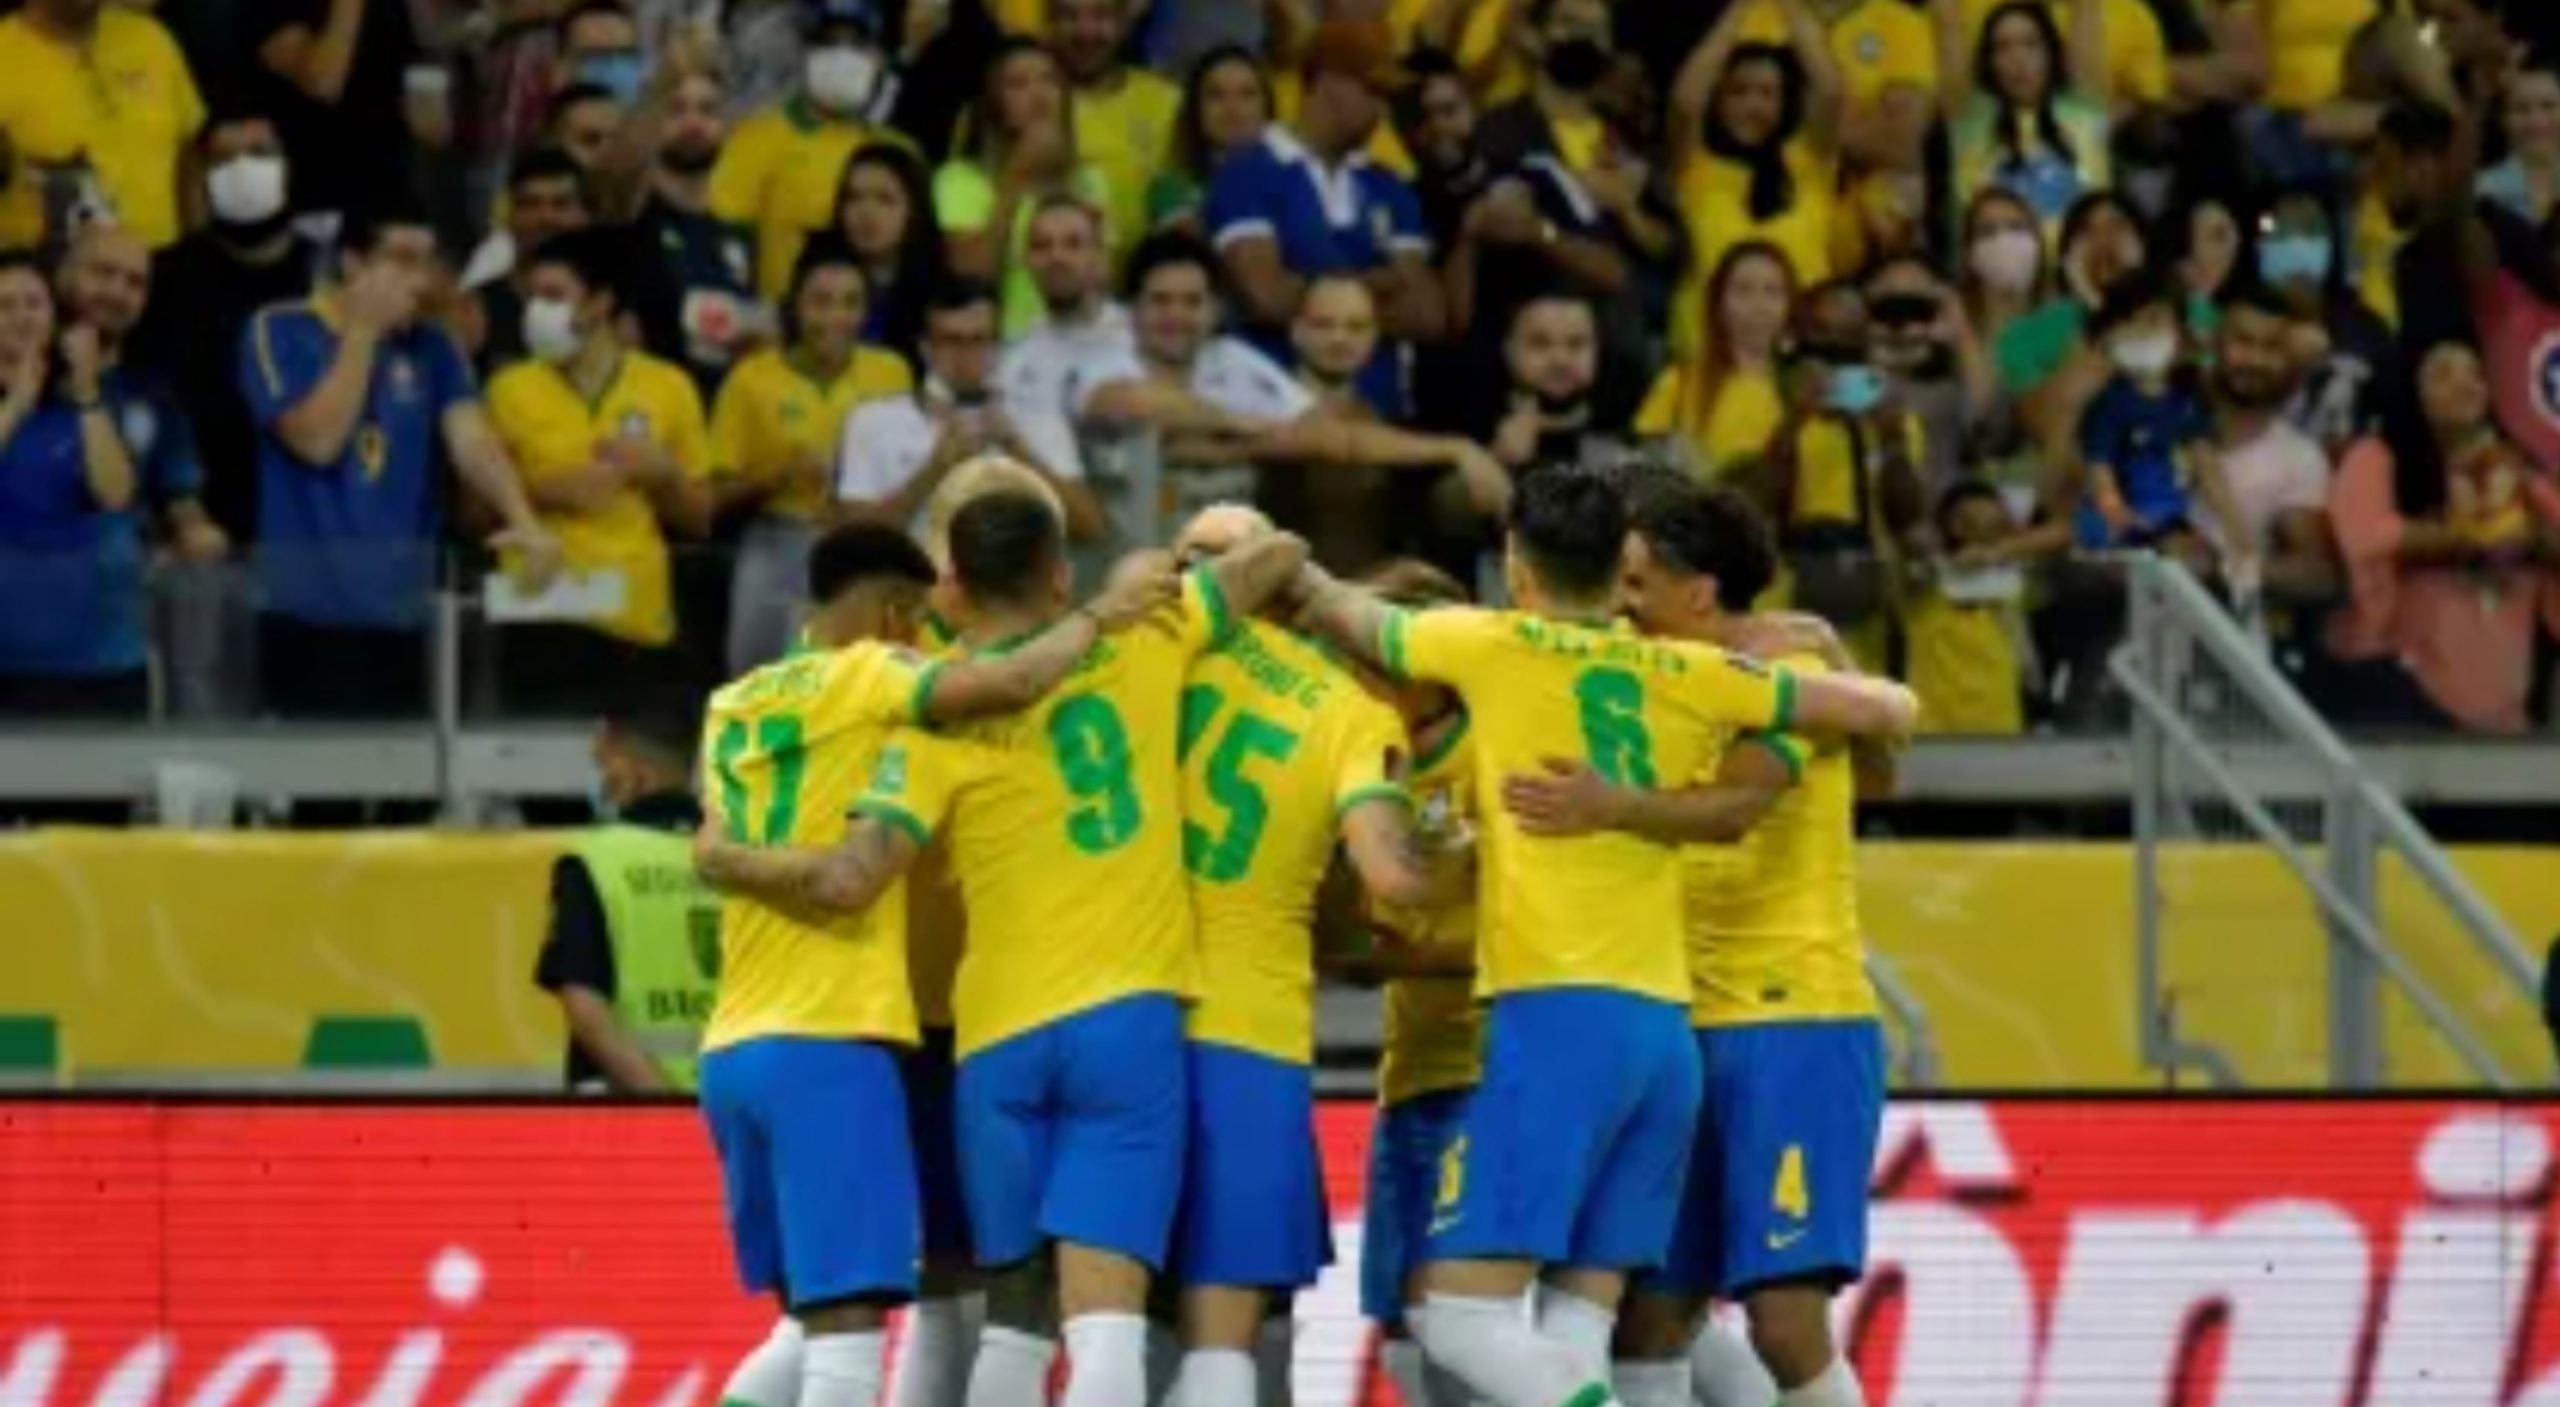 Veja datas e horários dos jogos da Seleção Brasileira na Copa do